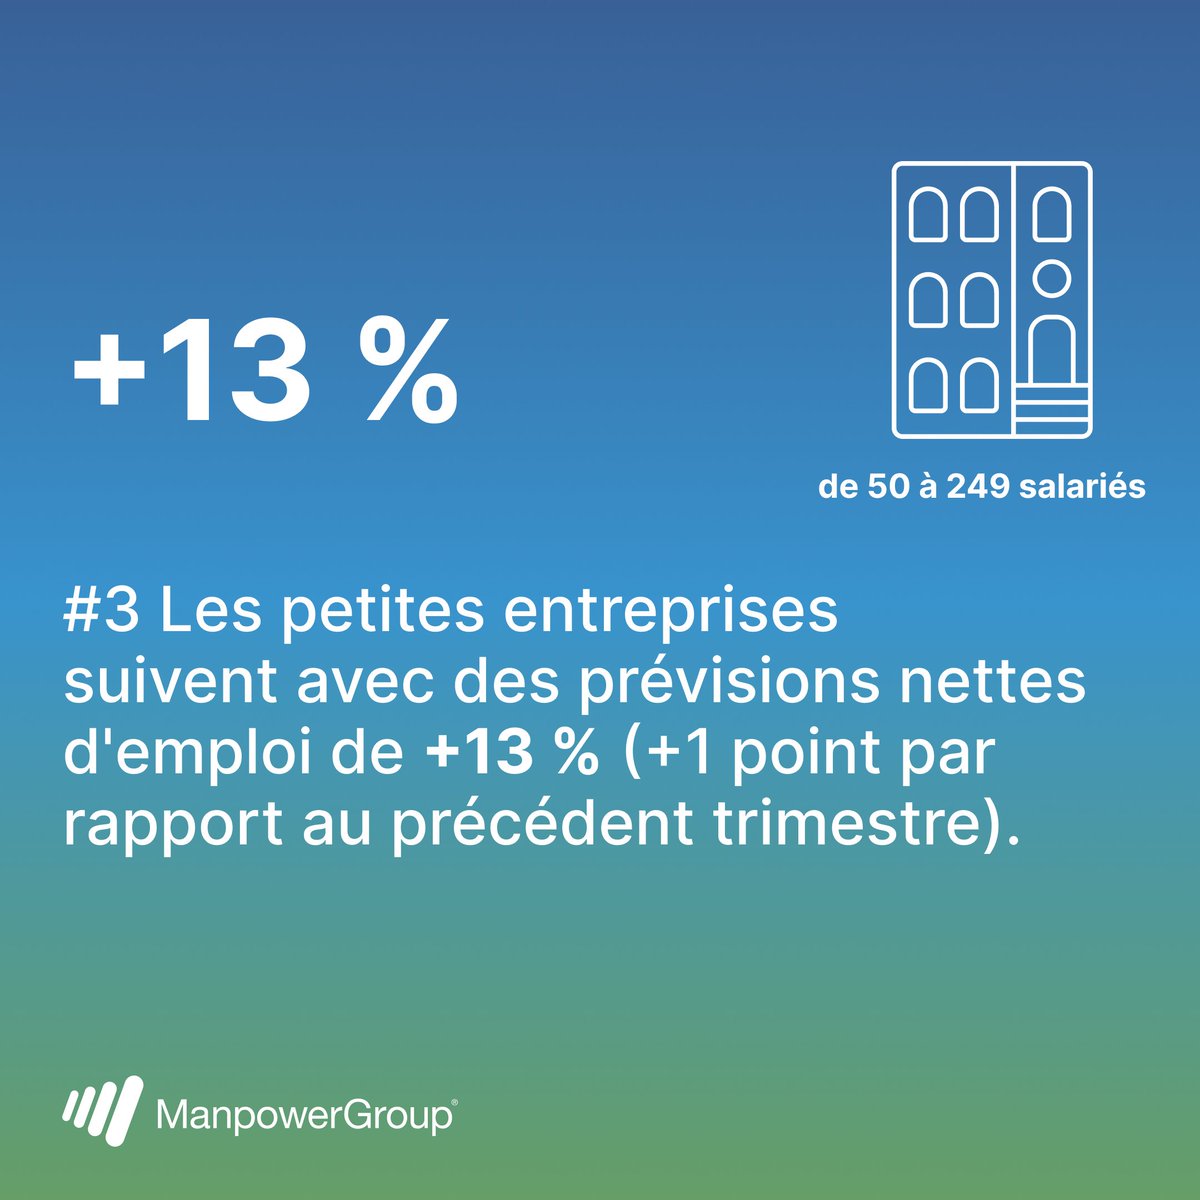 Quelles sont les prévisions nettes d'emploi selon la taille des entreprises en France ? 👉 Ce sont les très grandes entreprises et les grandes entreprises qui ont les meilleures perspectives avec une prévision nette d’emploi de +28 % ! Découvrez les chiffres de notre baromètre👇